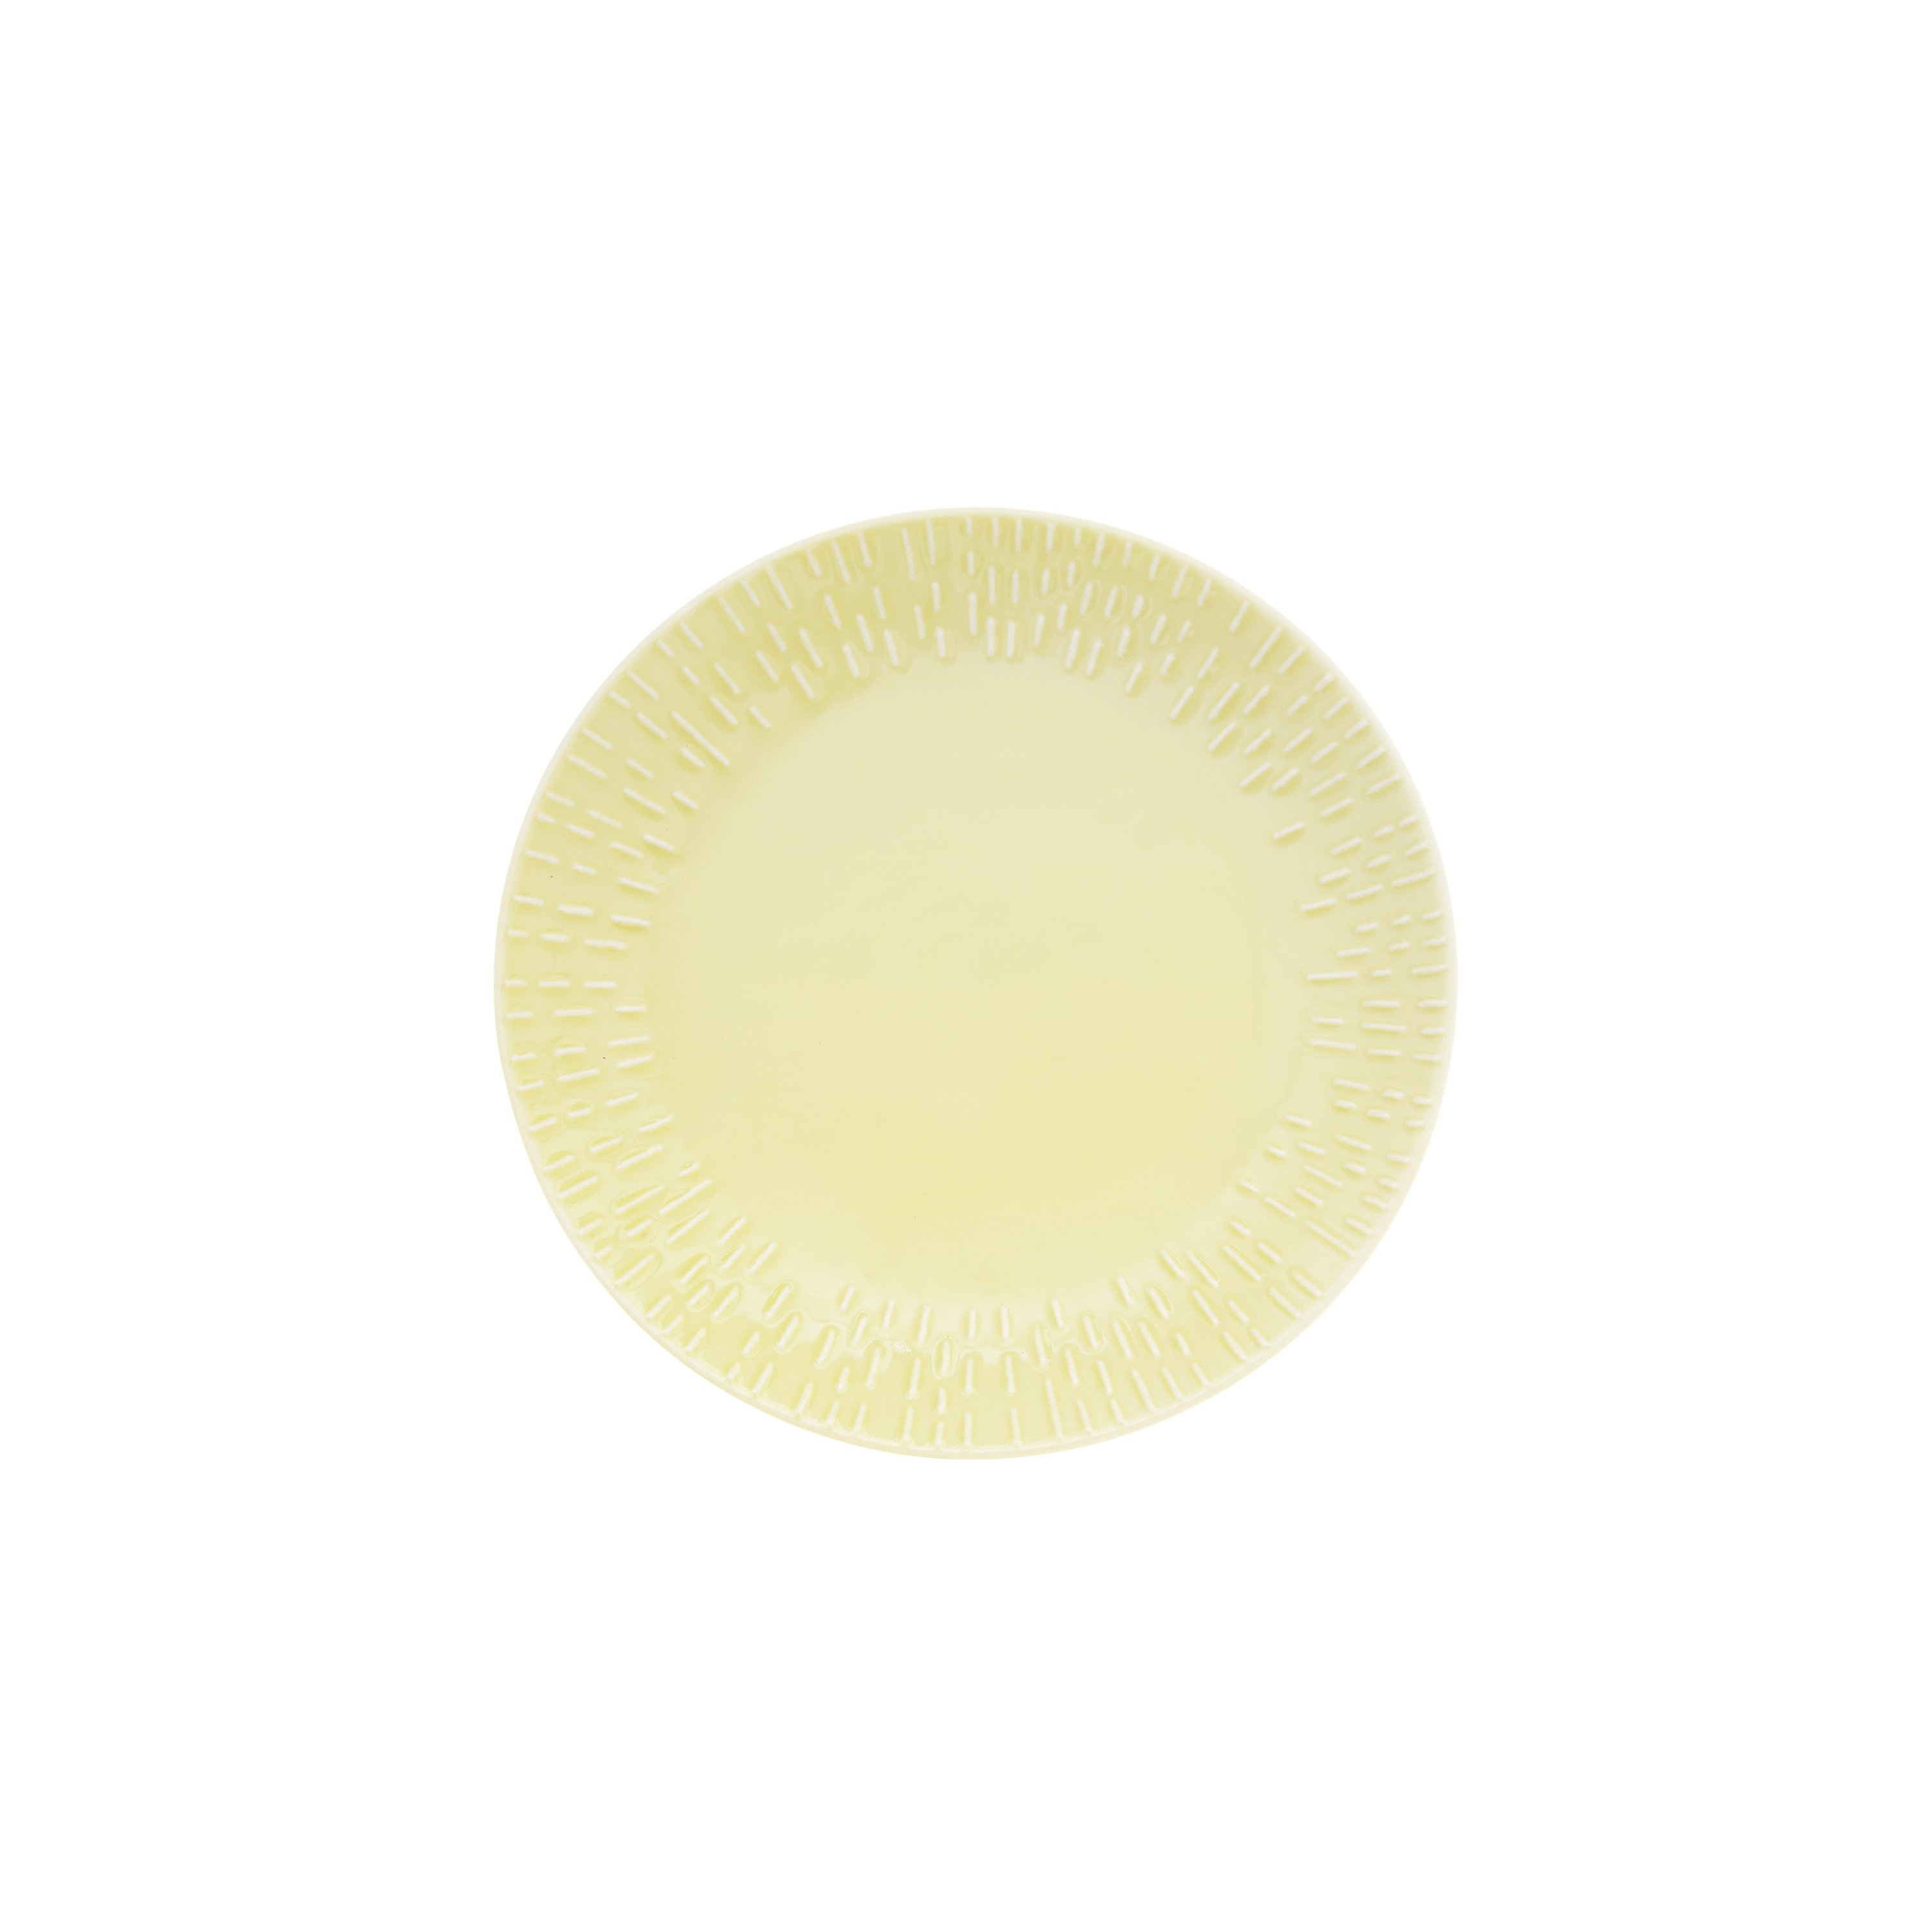 Aida - Life in Colour - Confetti - Lemon dessert plate w/relief porcelain (13302)